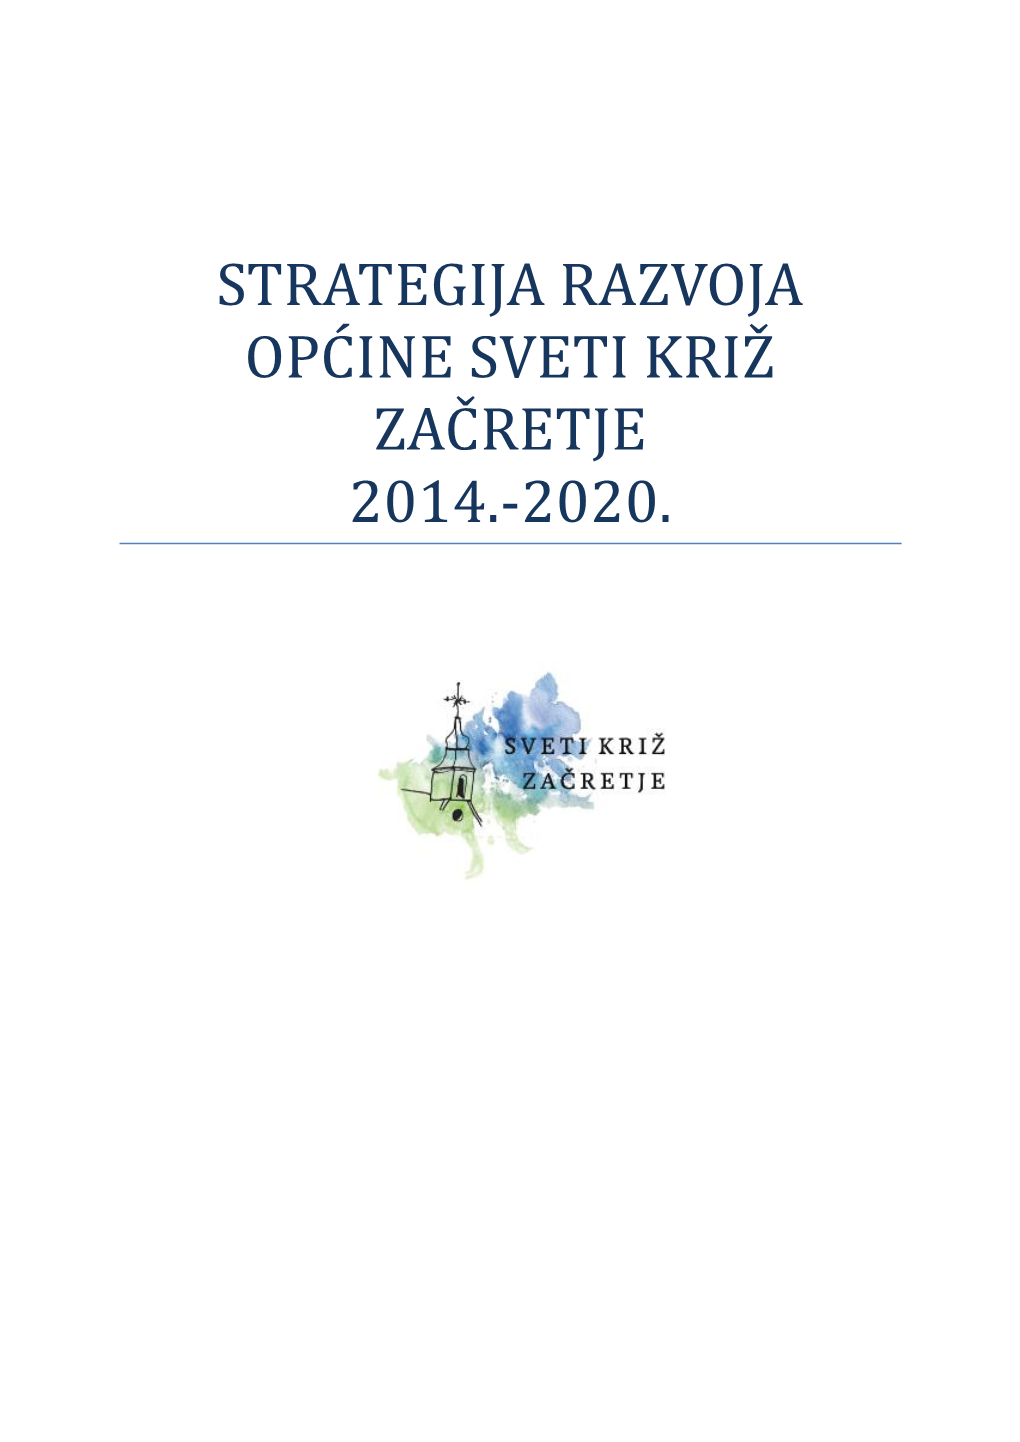 Strategija Razvoja Opć Ine Sveti Kriz Zać Retje 2014.-2020